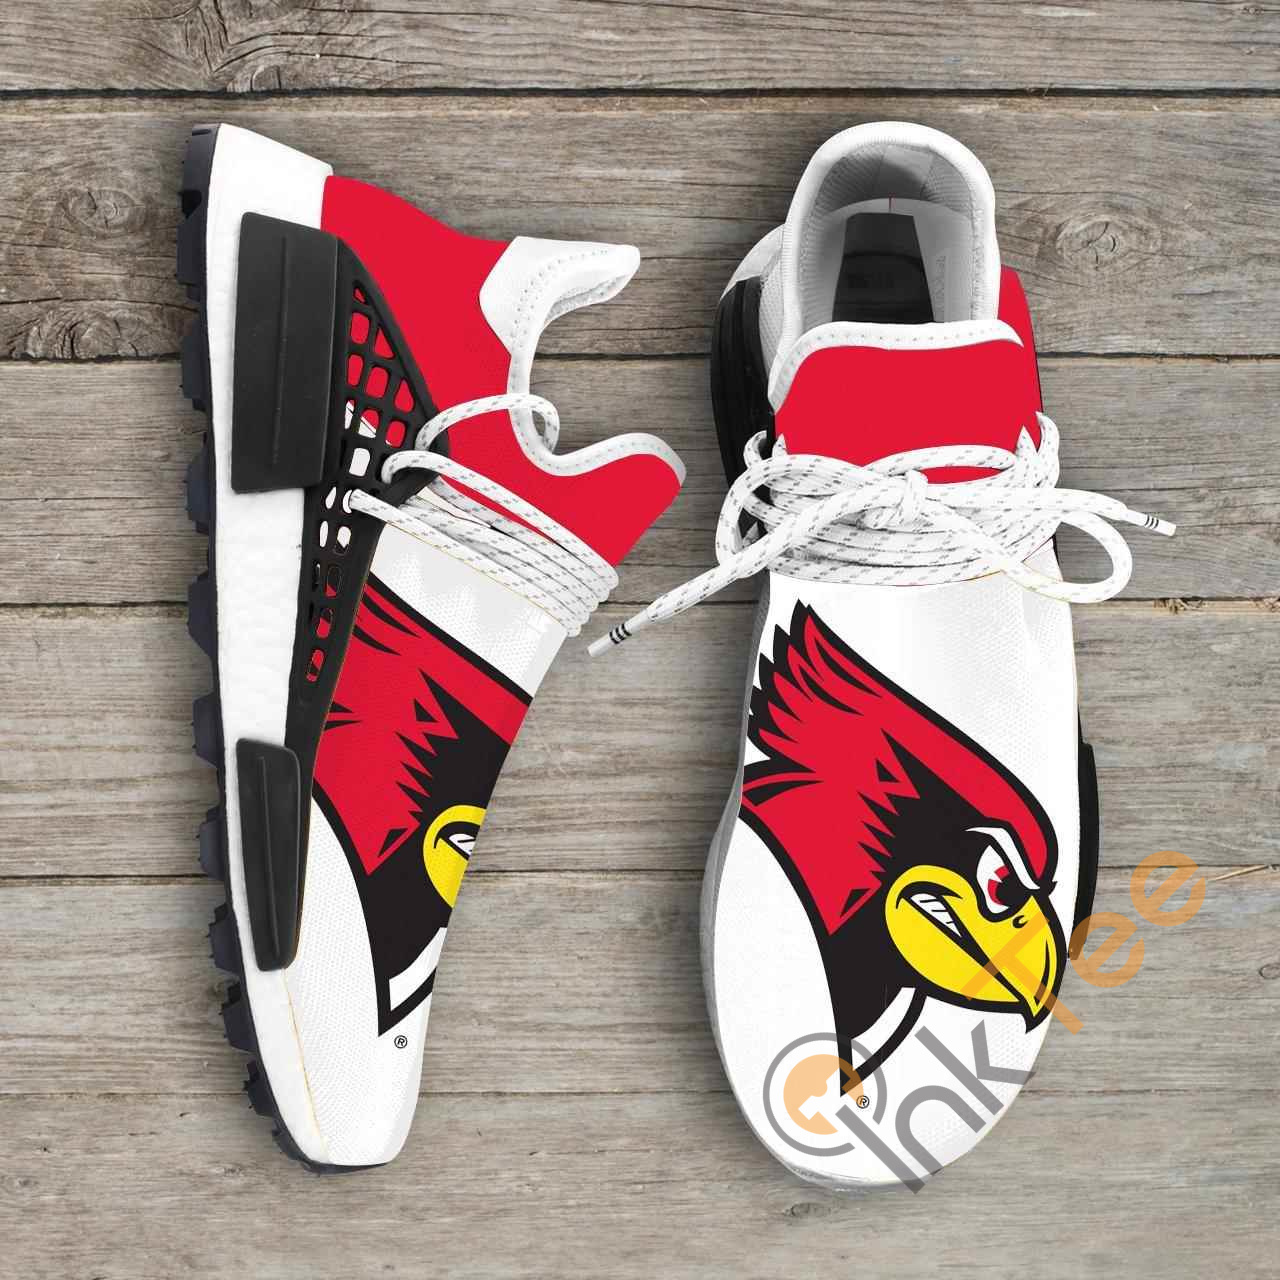 redbirds shoes